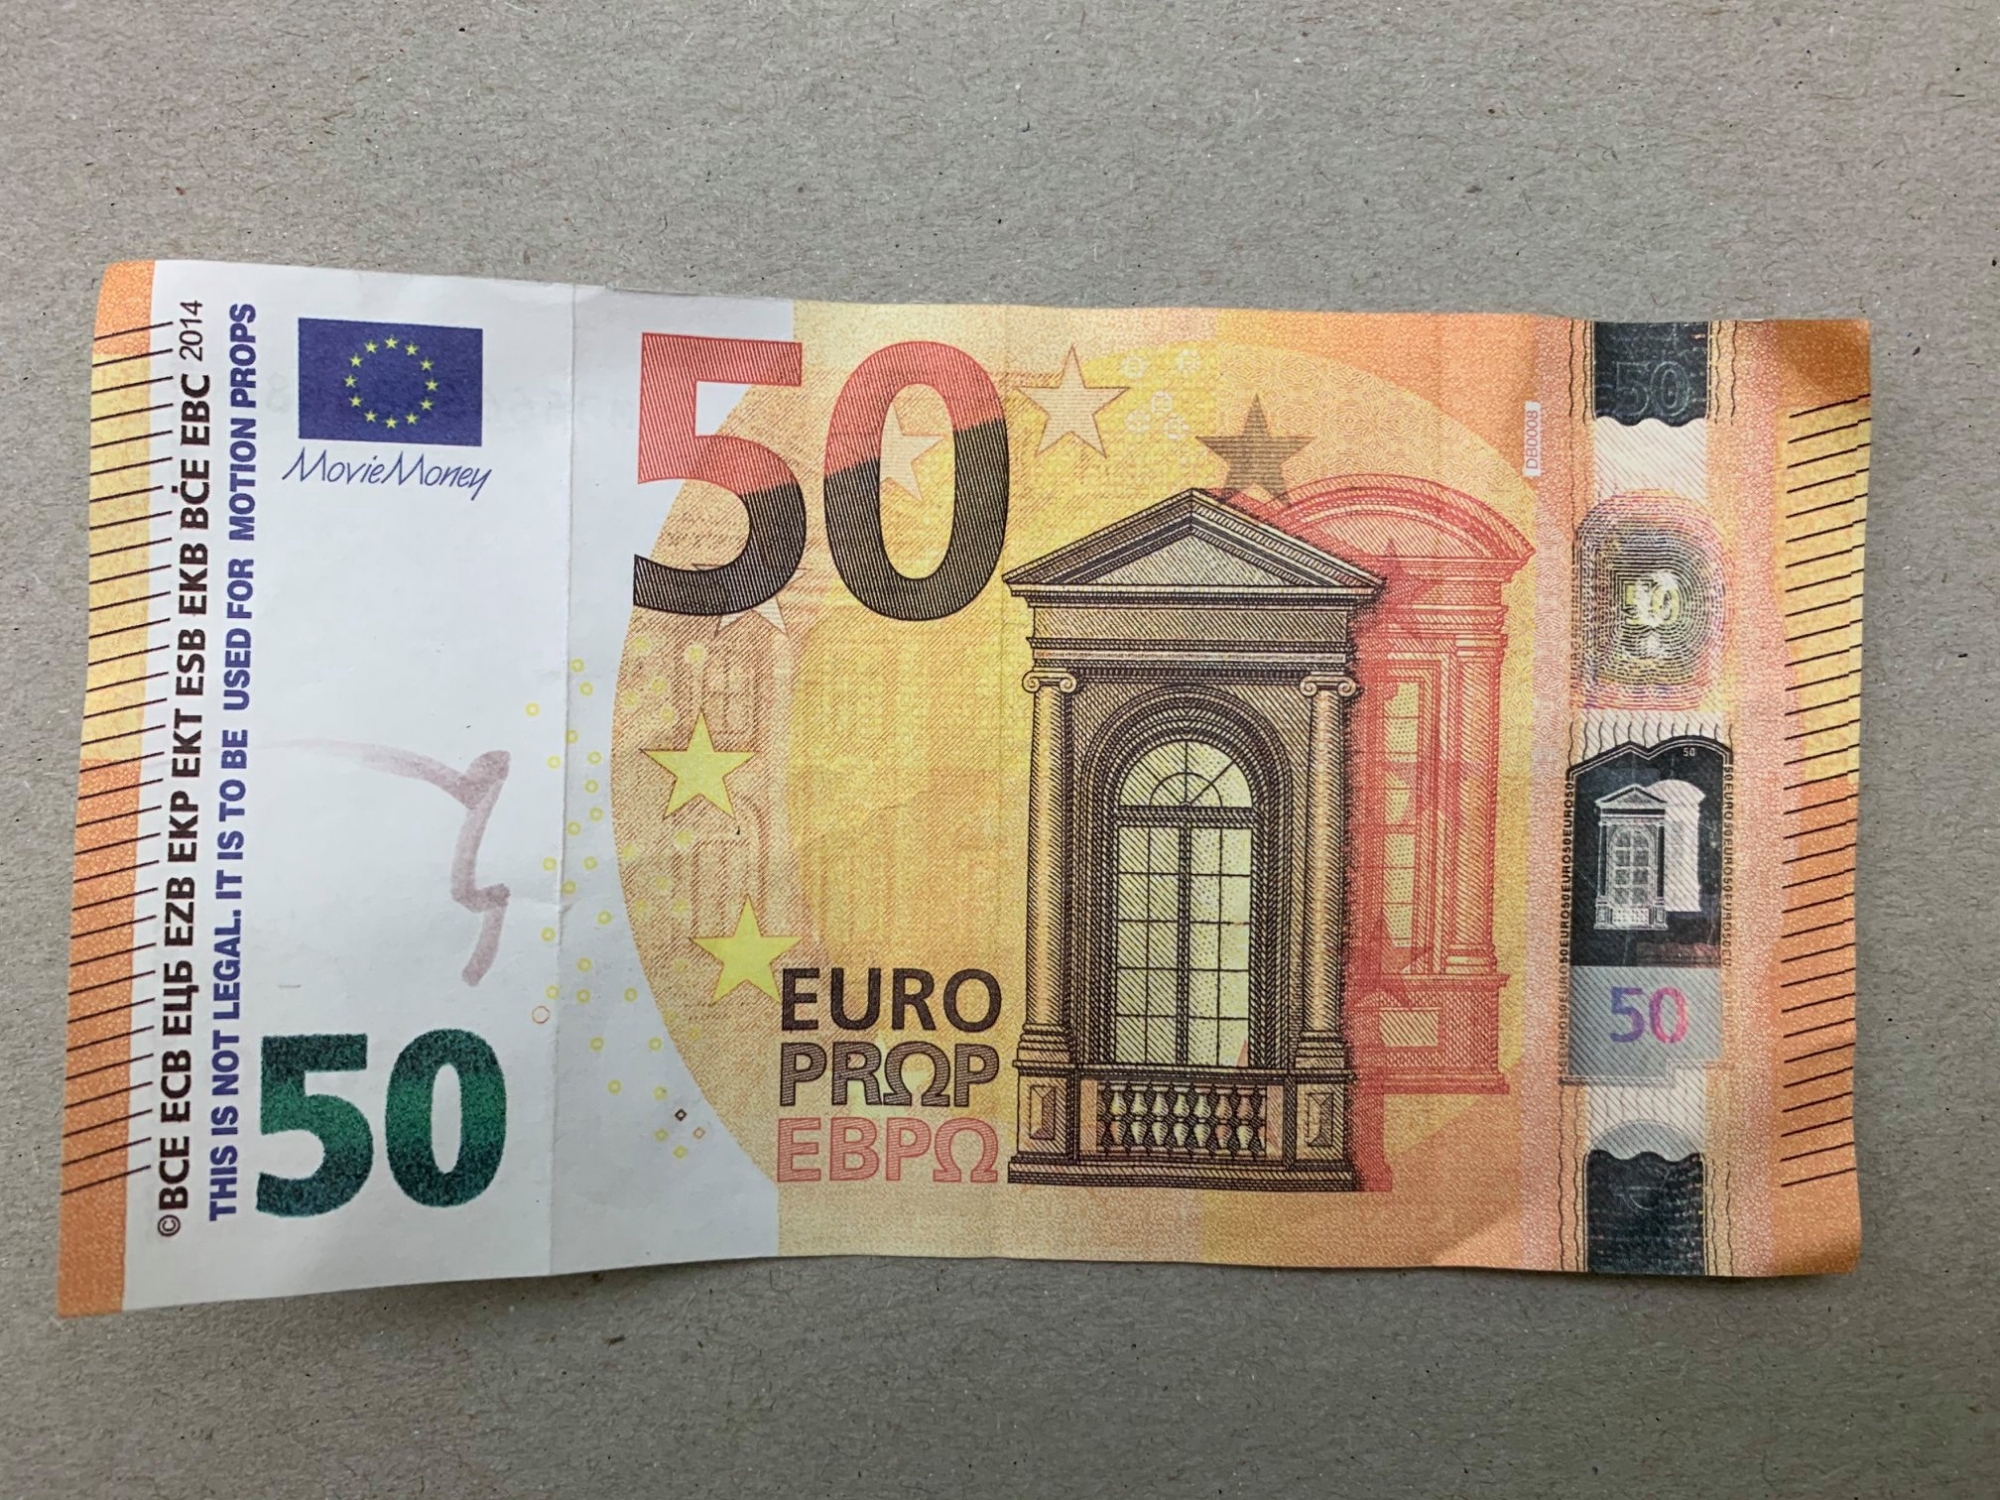 Les faux euros écoulés cette année portent le numéro MB6666888880.